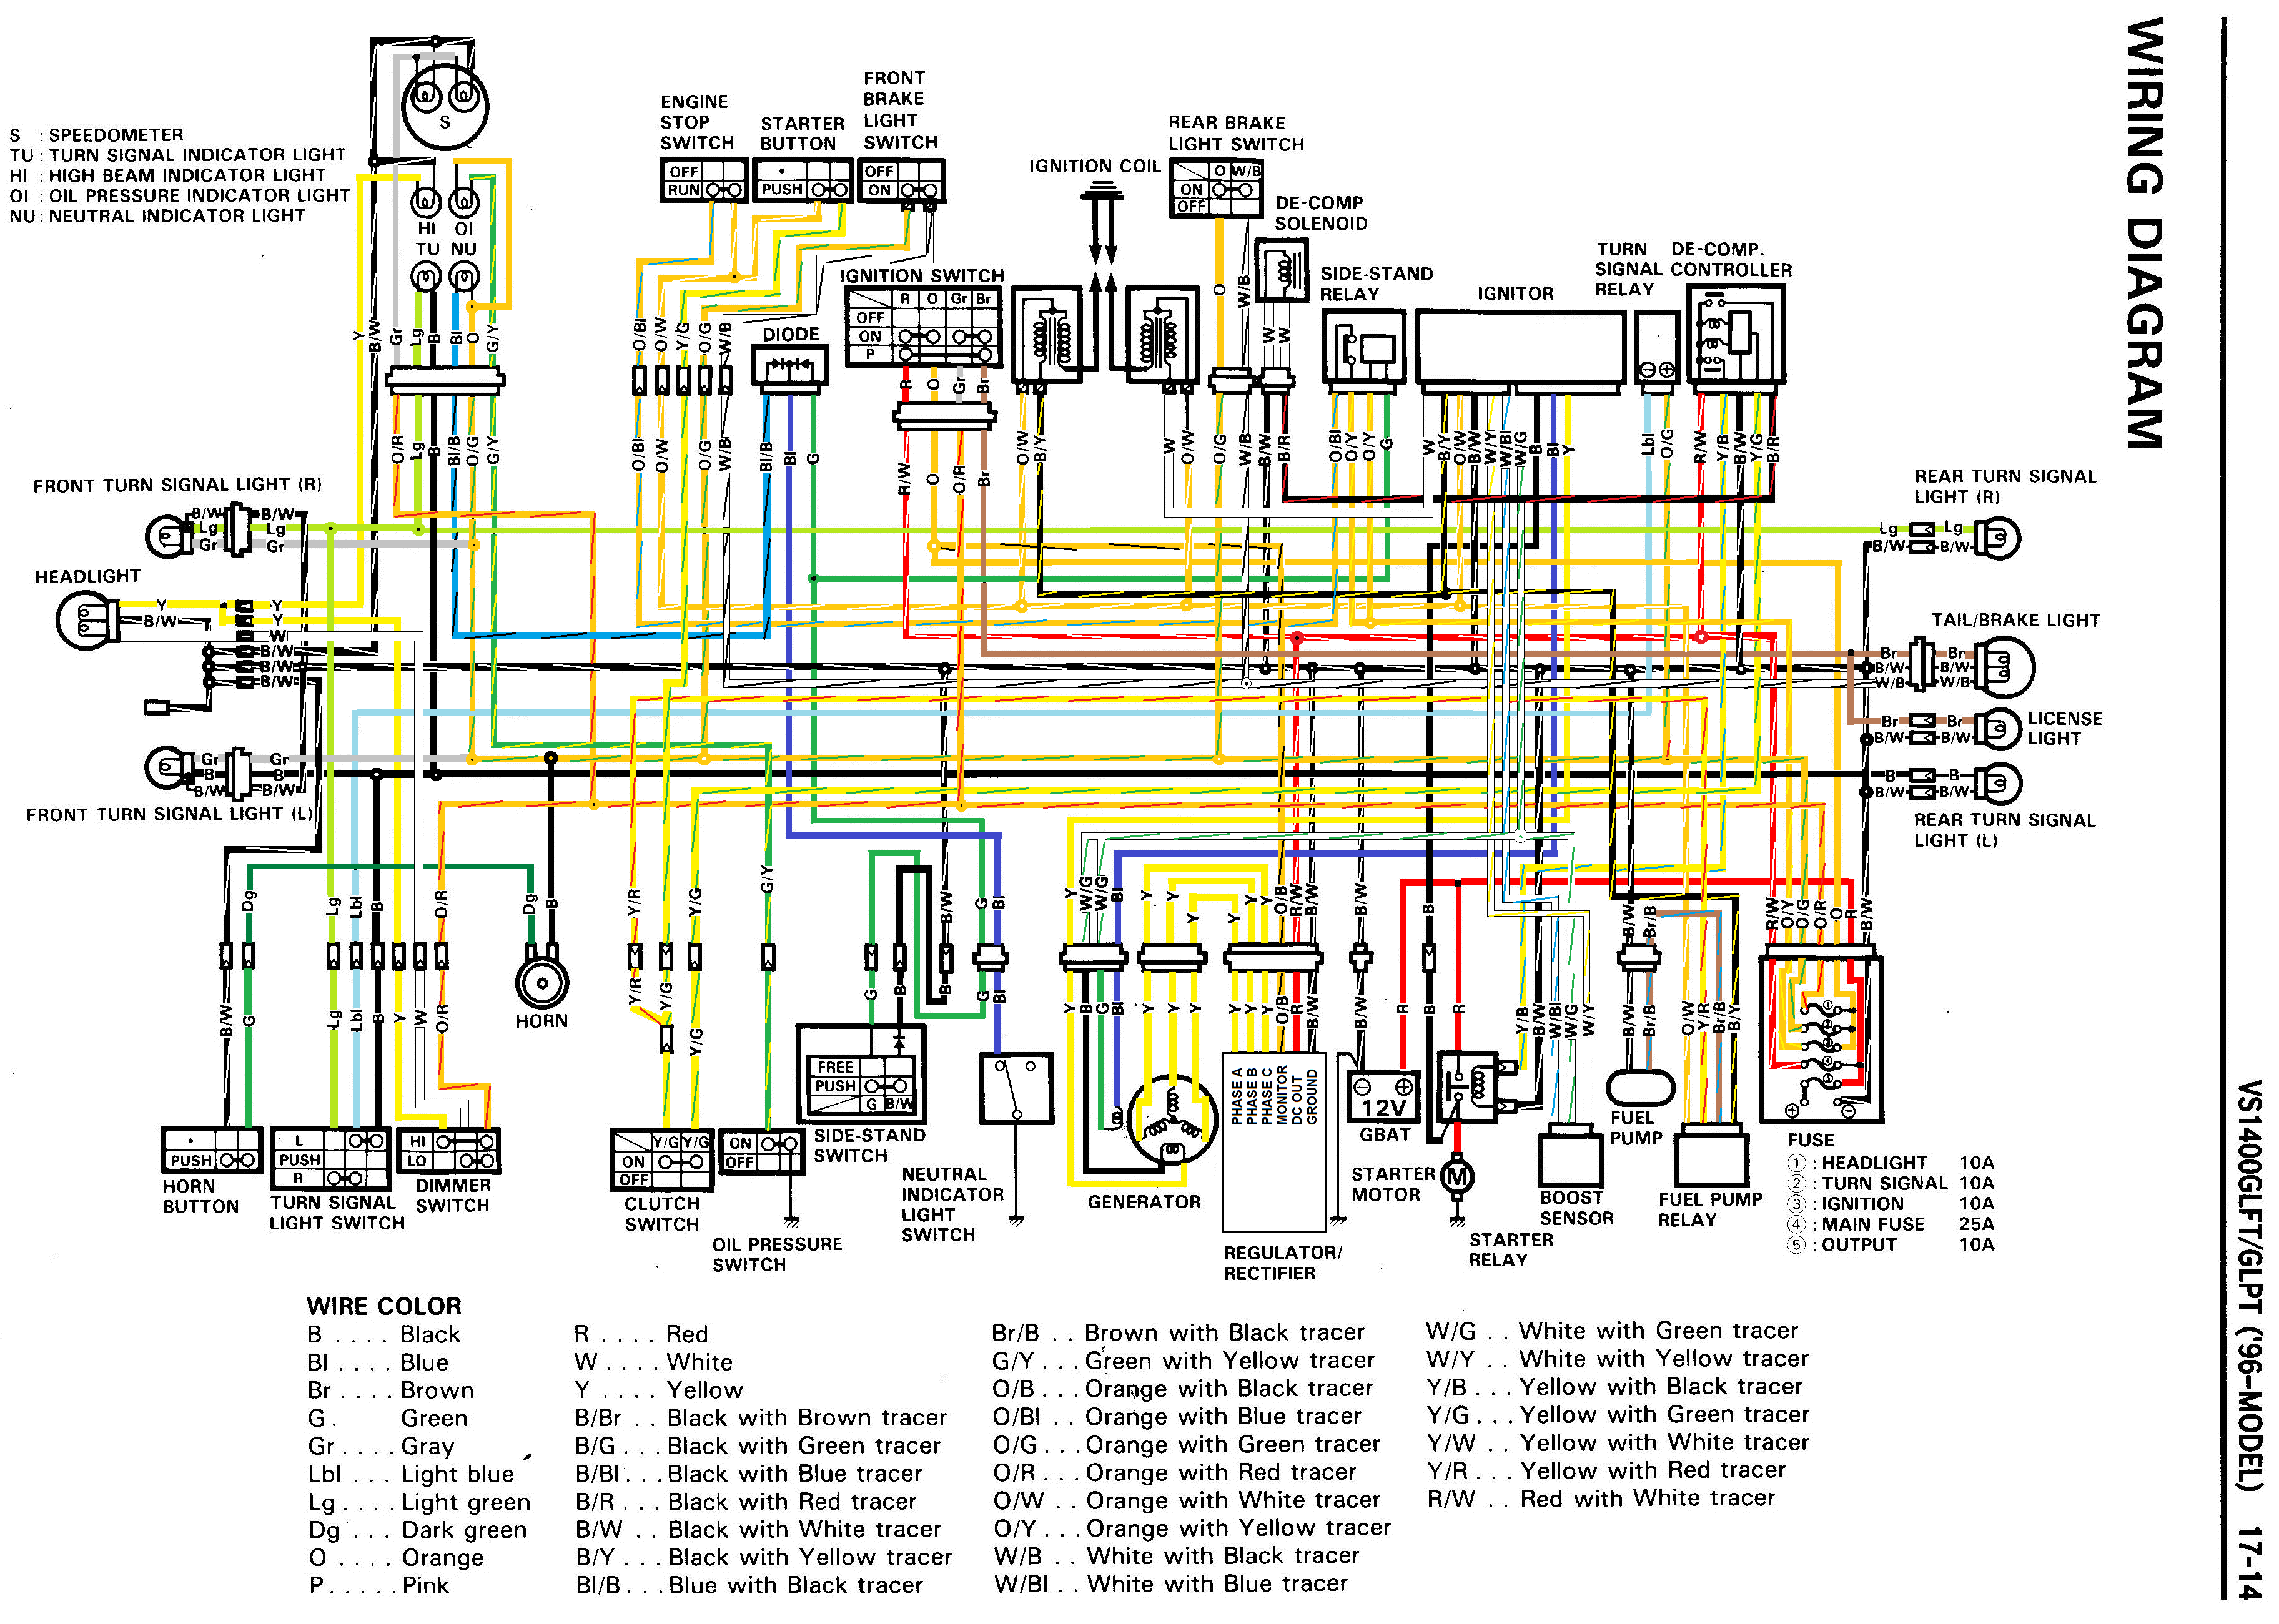 2001 Suzuki Intruder 800 Wiring Diagrams | Online Wiring Diagram